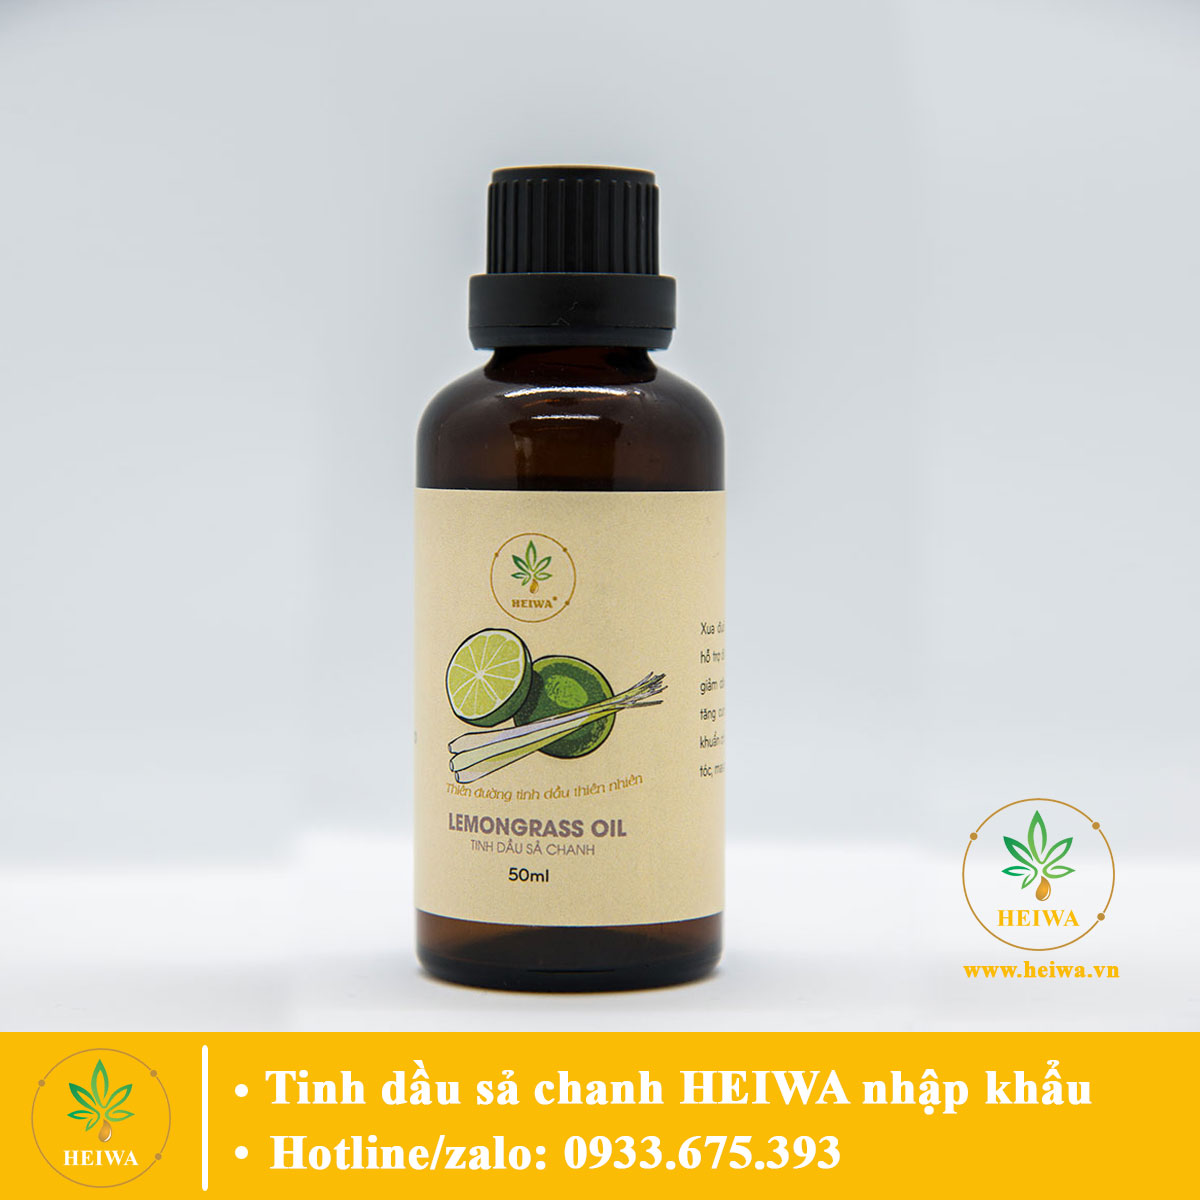 HCMCHAI LỚN- GIẢM SÂU Tinh dầu Sả chanh 50ML thương hiệu HEIWA nhập khẩu thumbnail